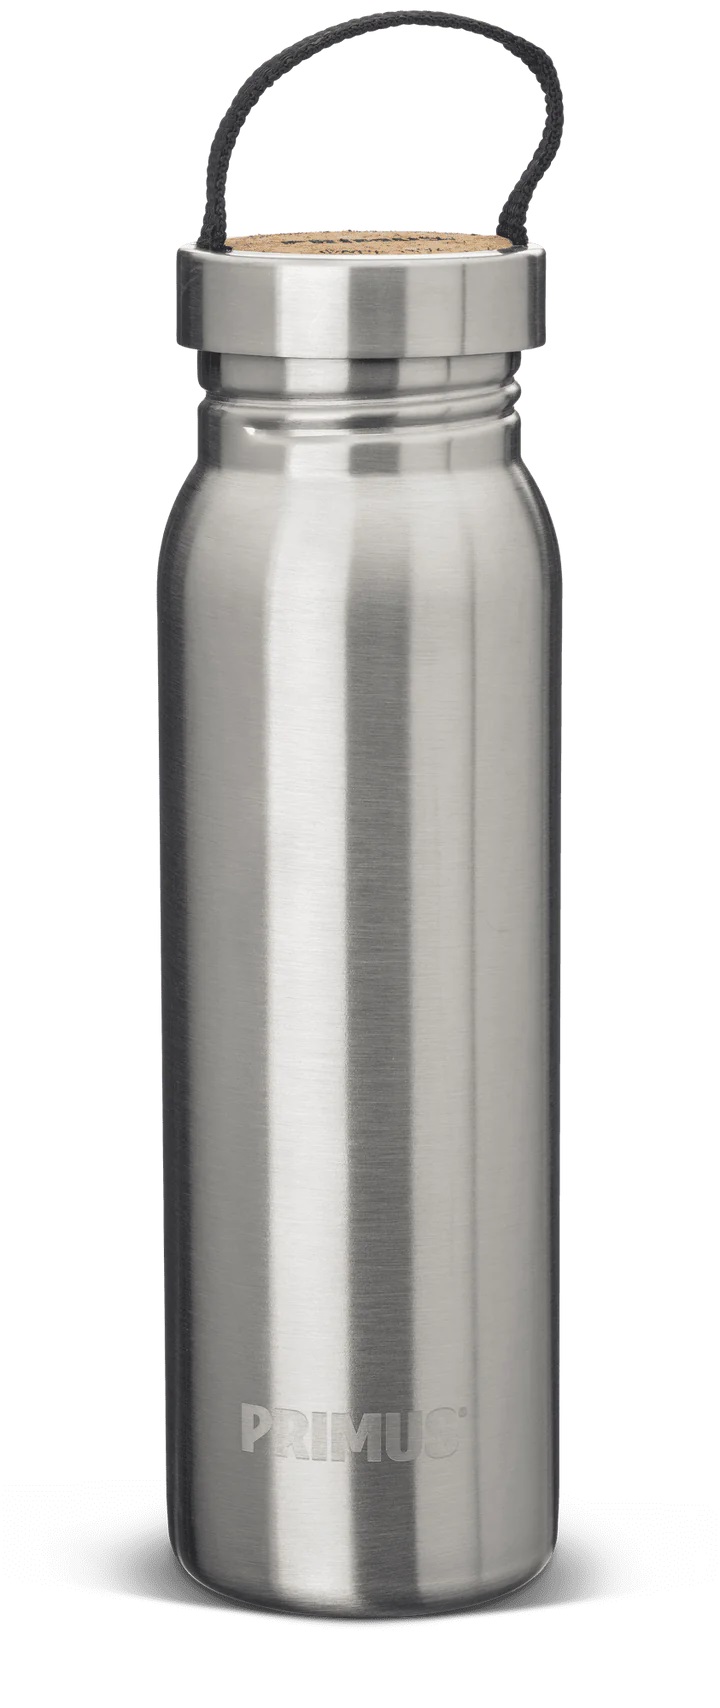 Primus Klunken Bottle 0.7L S.S.